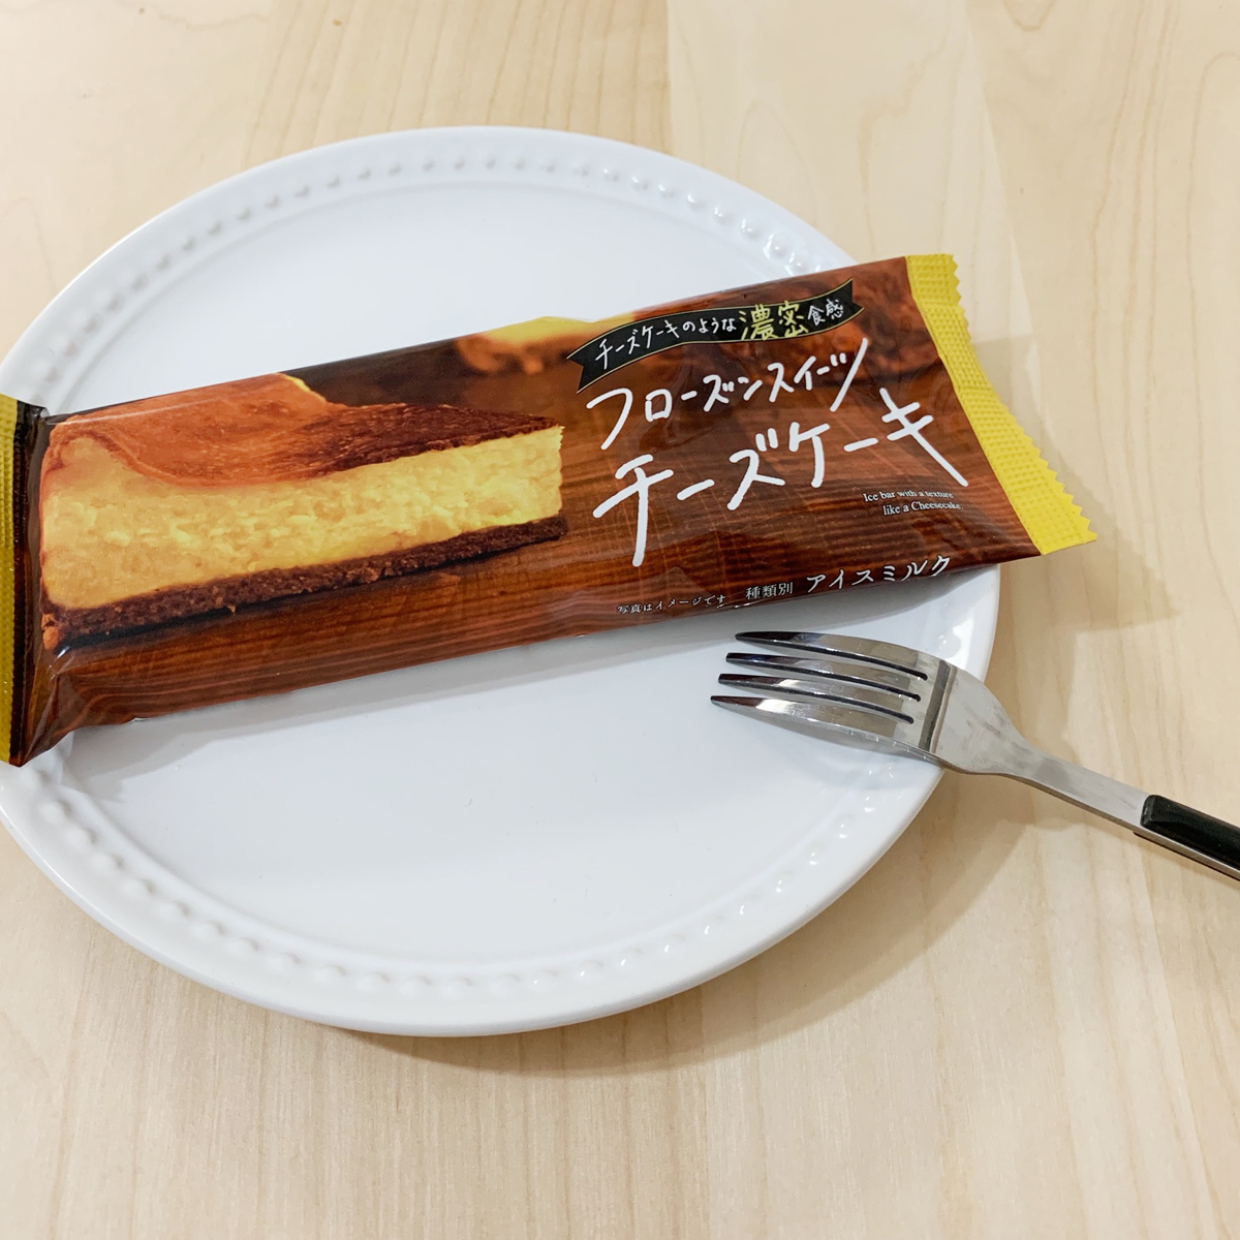  【ファミマ新作】「フローズンスイーツチーズケーキ」はアイスなのにチーズケーキそのものな味！？ 